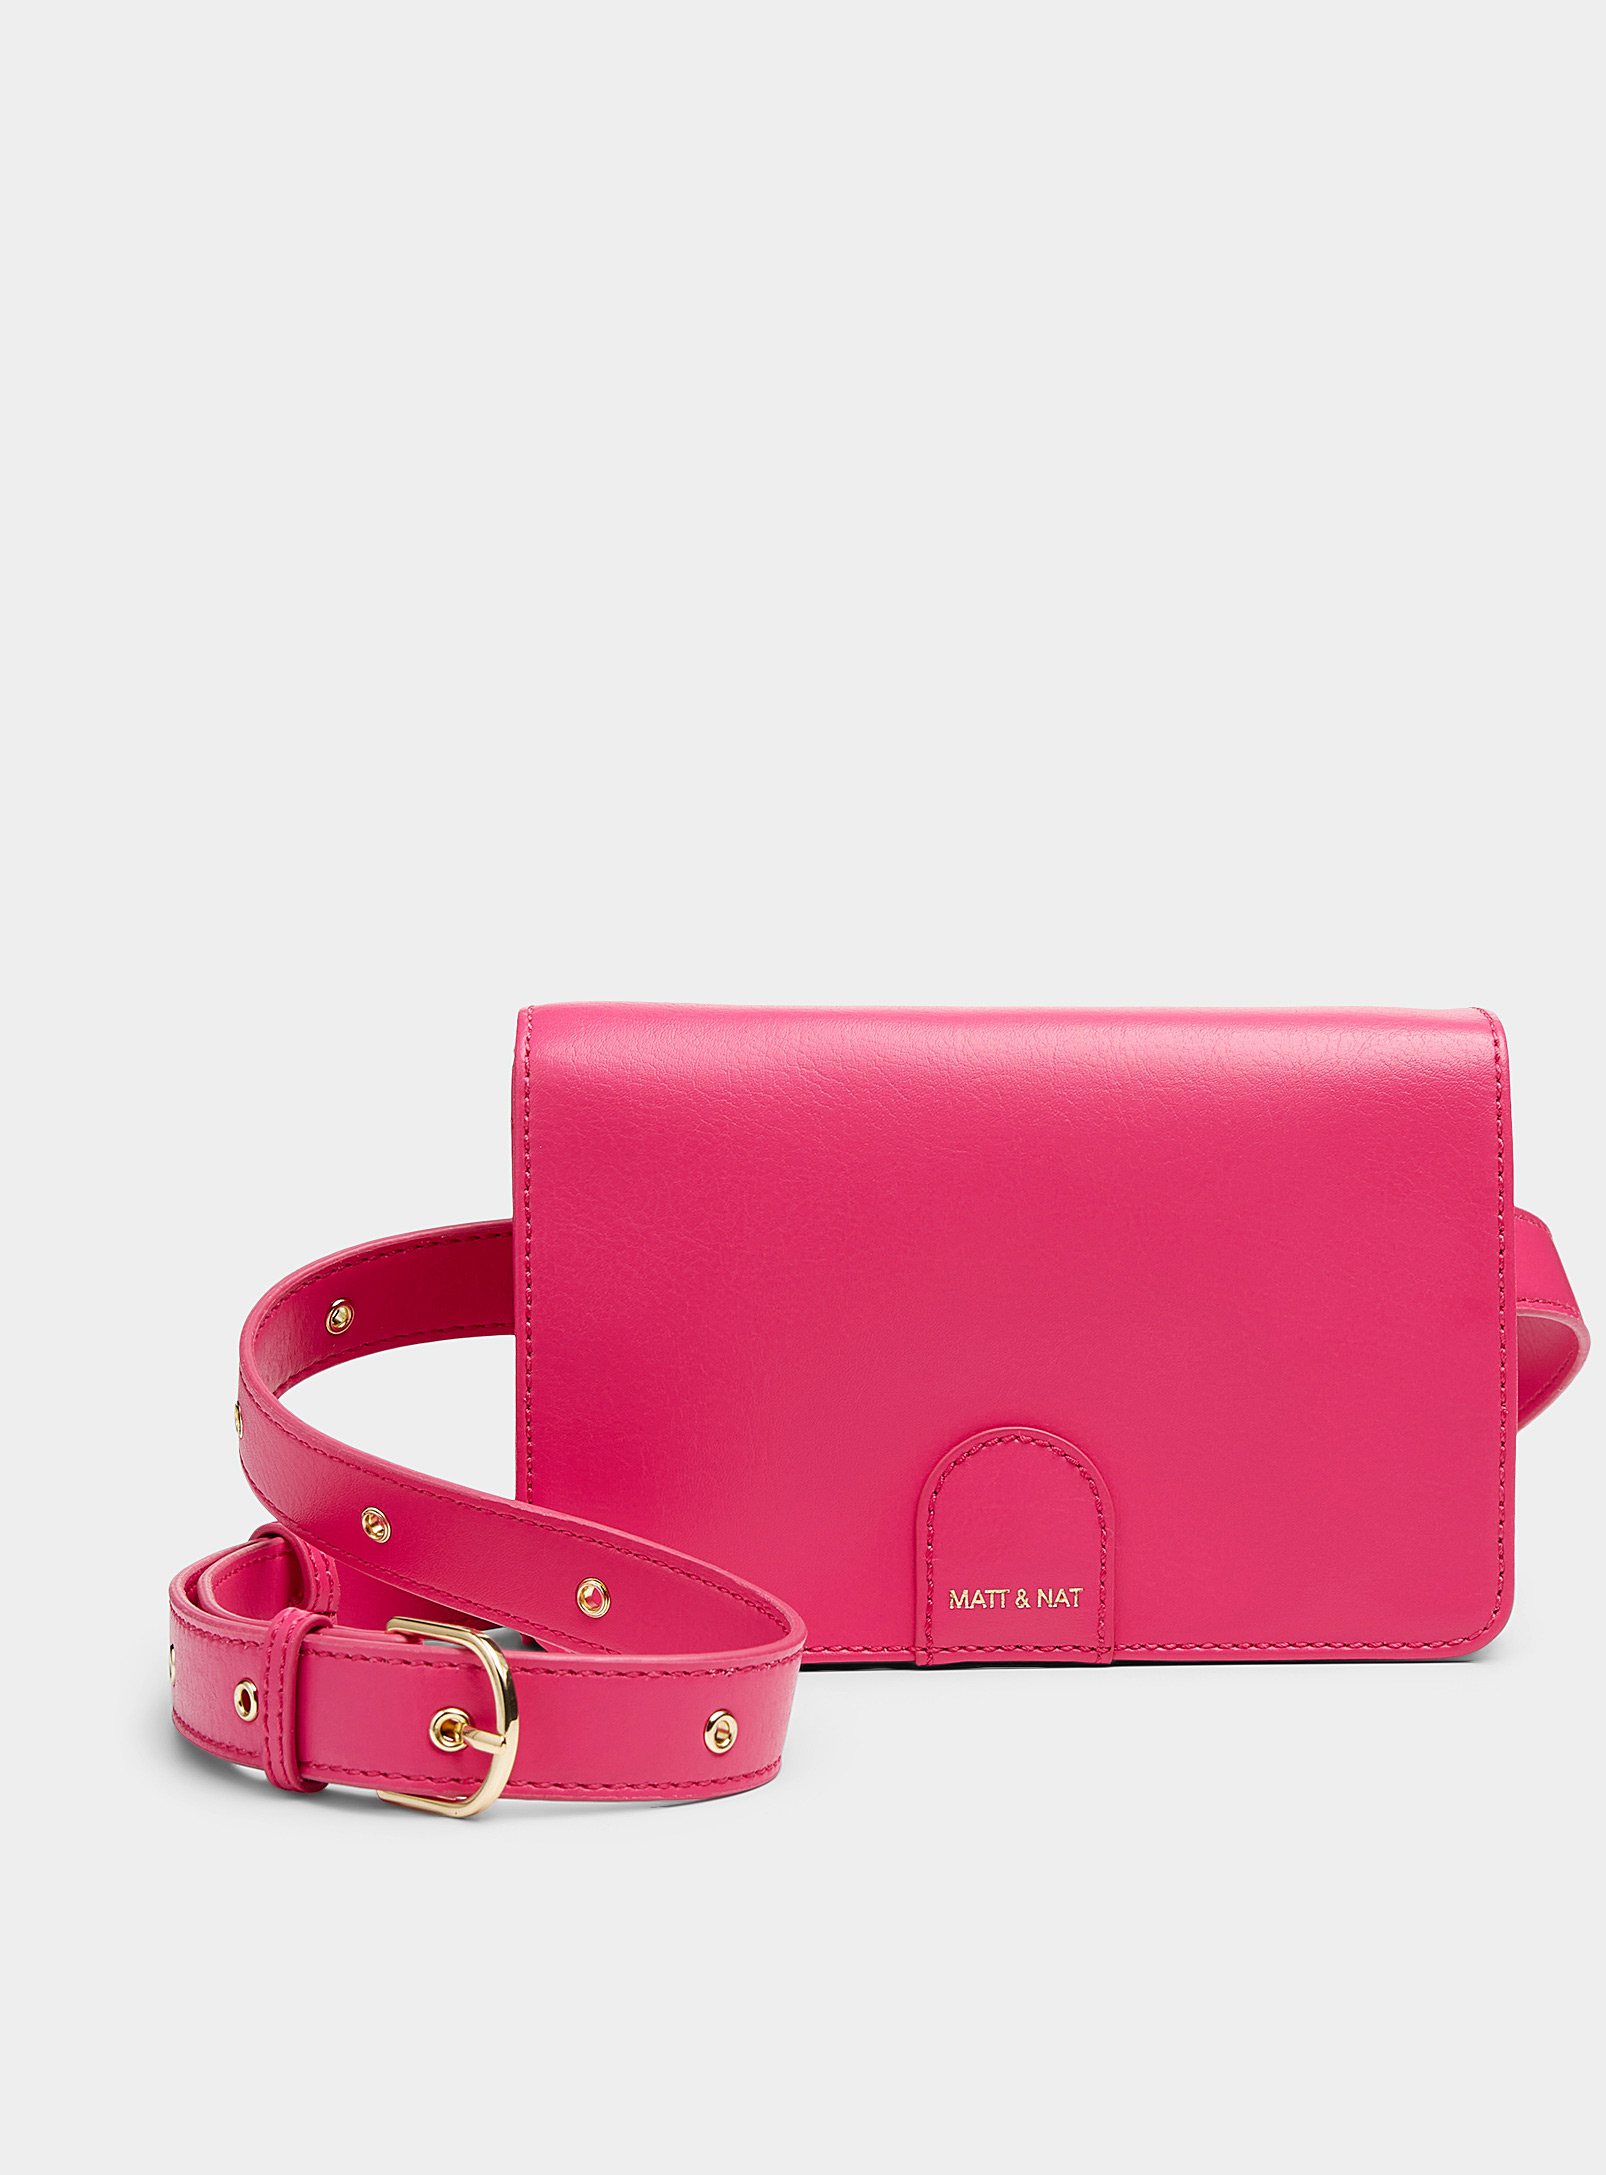 Matt & Nat Nino Minimalist Flap Belt Bag In Pink